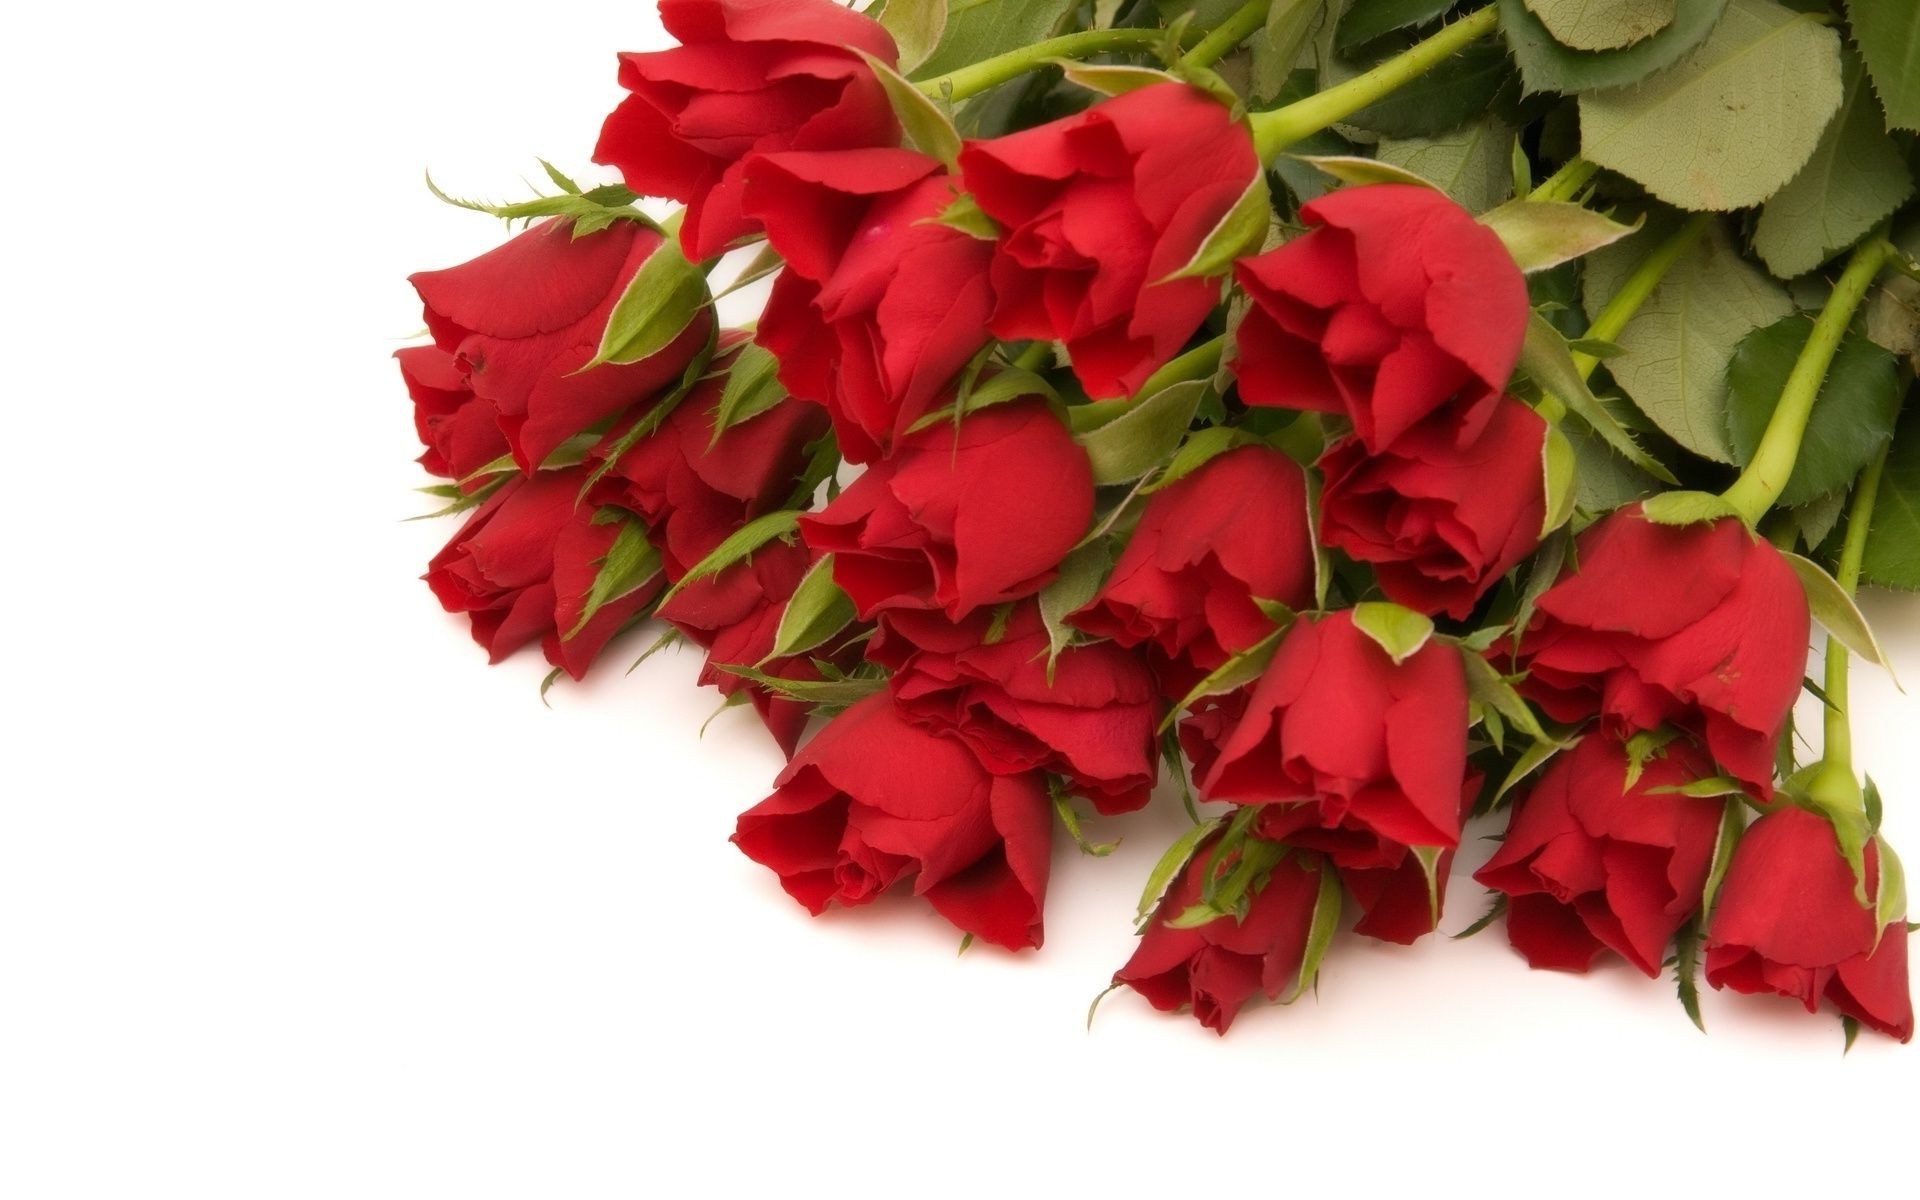 розы подарок любовь романтика романтический юбилей цветок праздник лист букет цветочные украшения день рождения флора лепесток природа блюминг свадьба карта приветствие